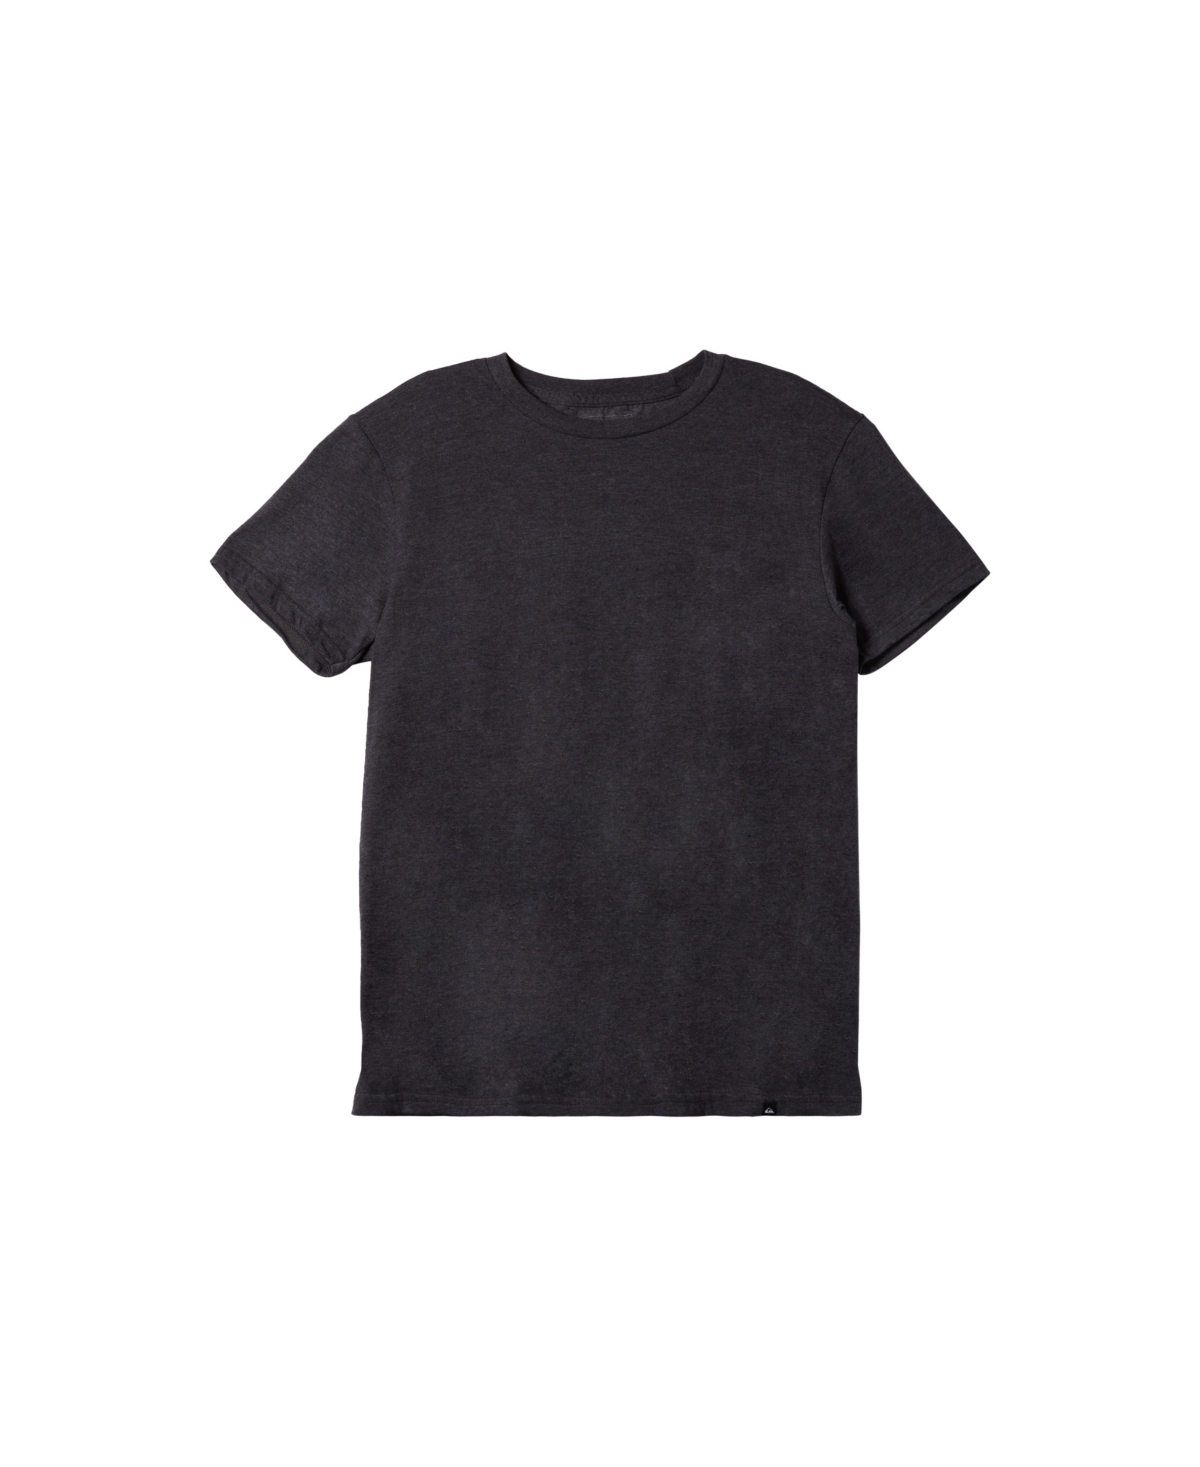 Quiksilver Men's Flow Mod Short Sleeves T-shirt In Medium Gray Heather